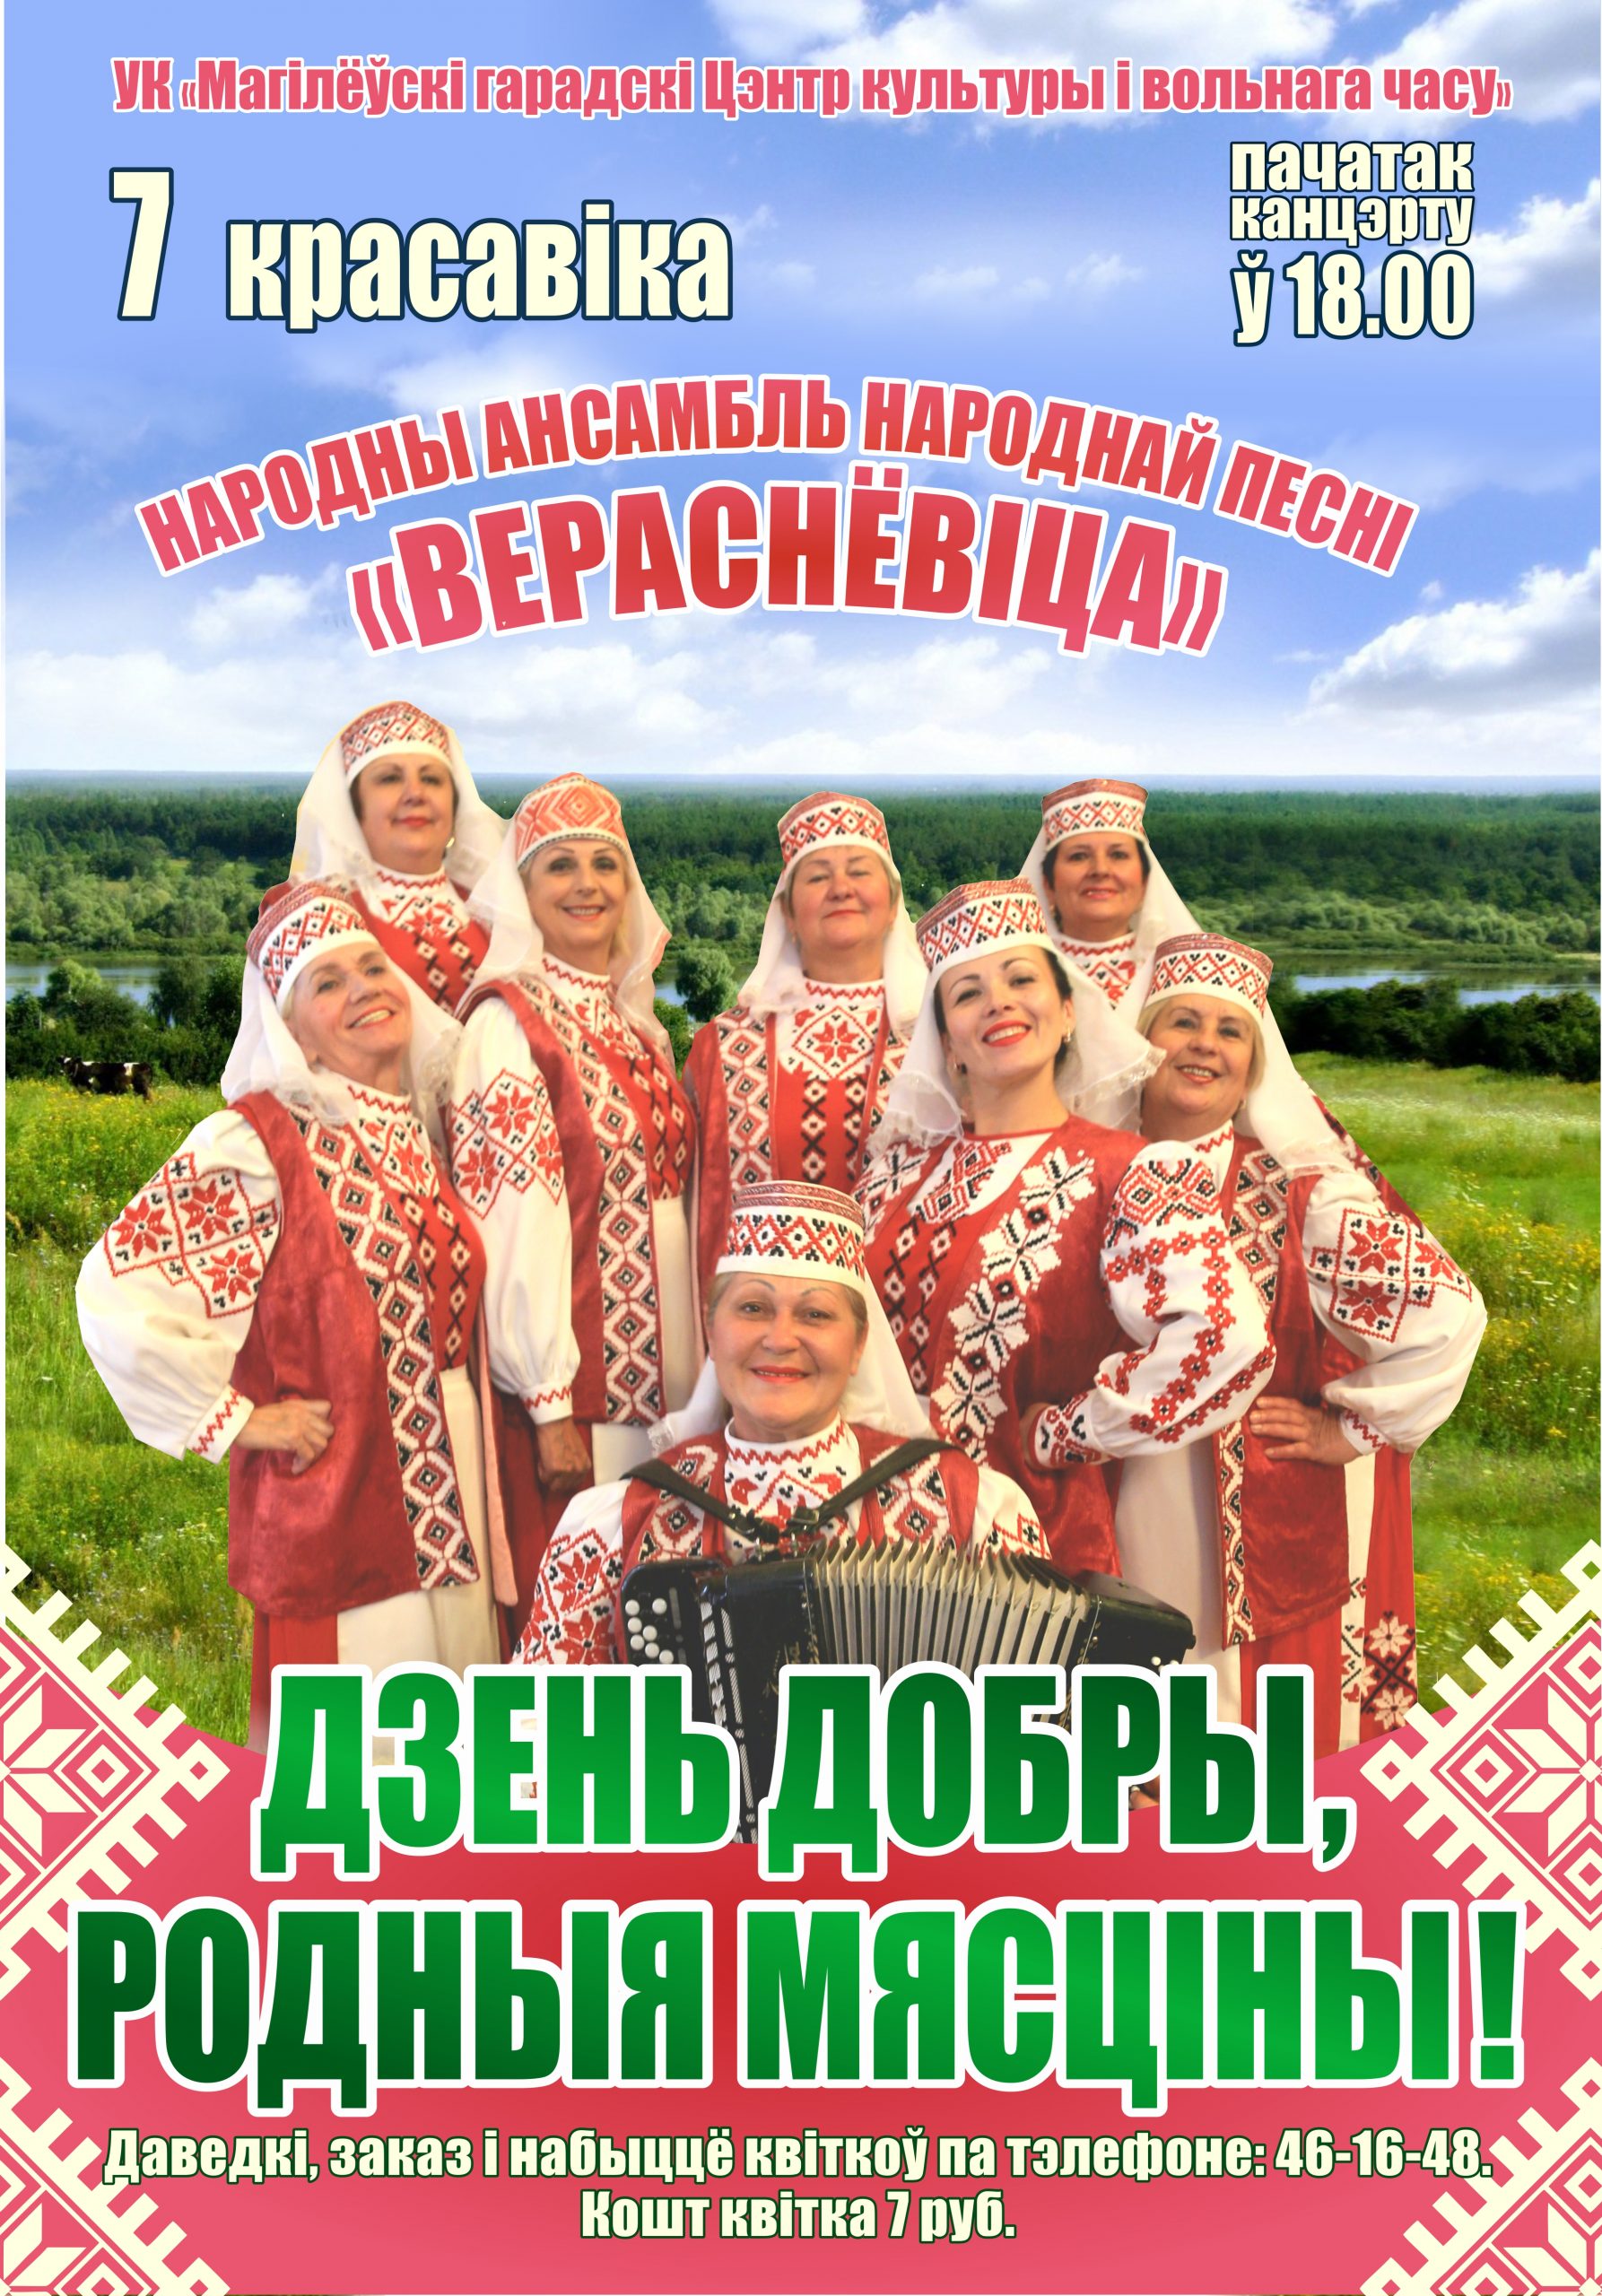 Народный ансамбль народной песни «Вераснёвіца» выступит в Могилеве 7 апреля